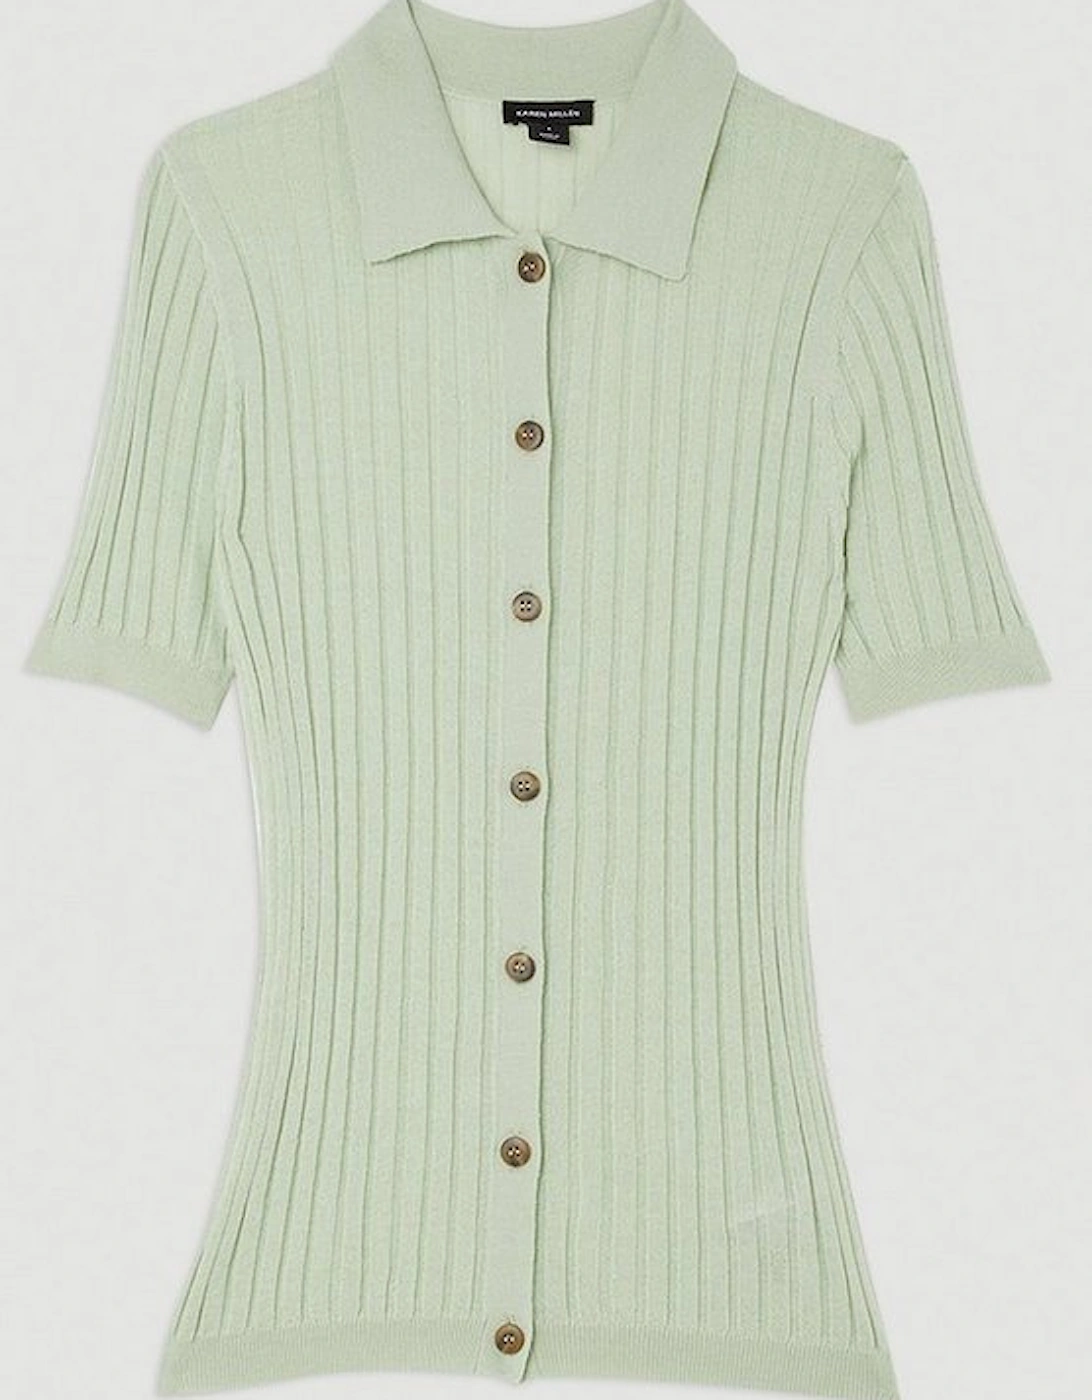 Lightweight Viscose Blend Summer Knit Polo Shirt